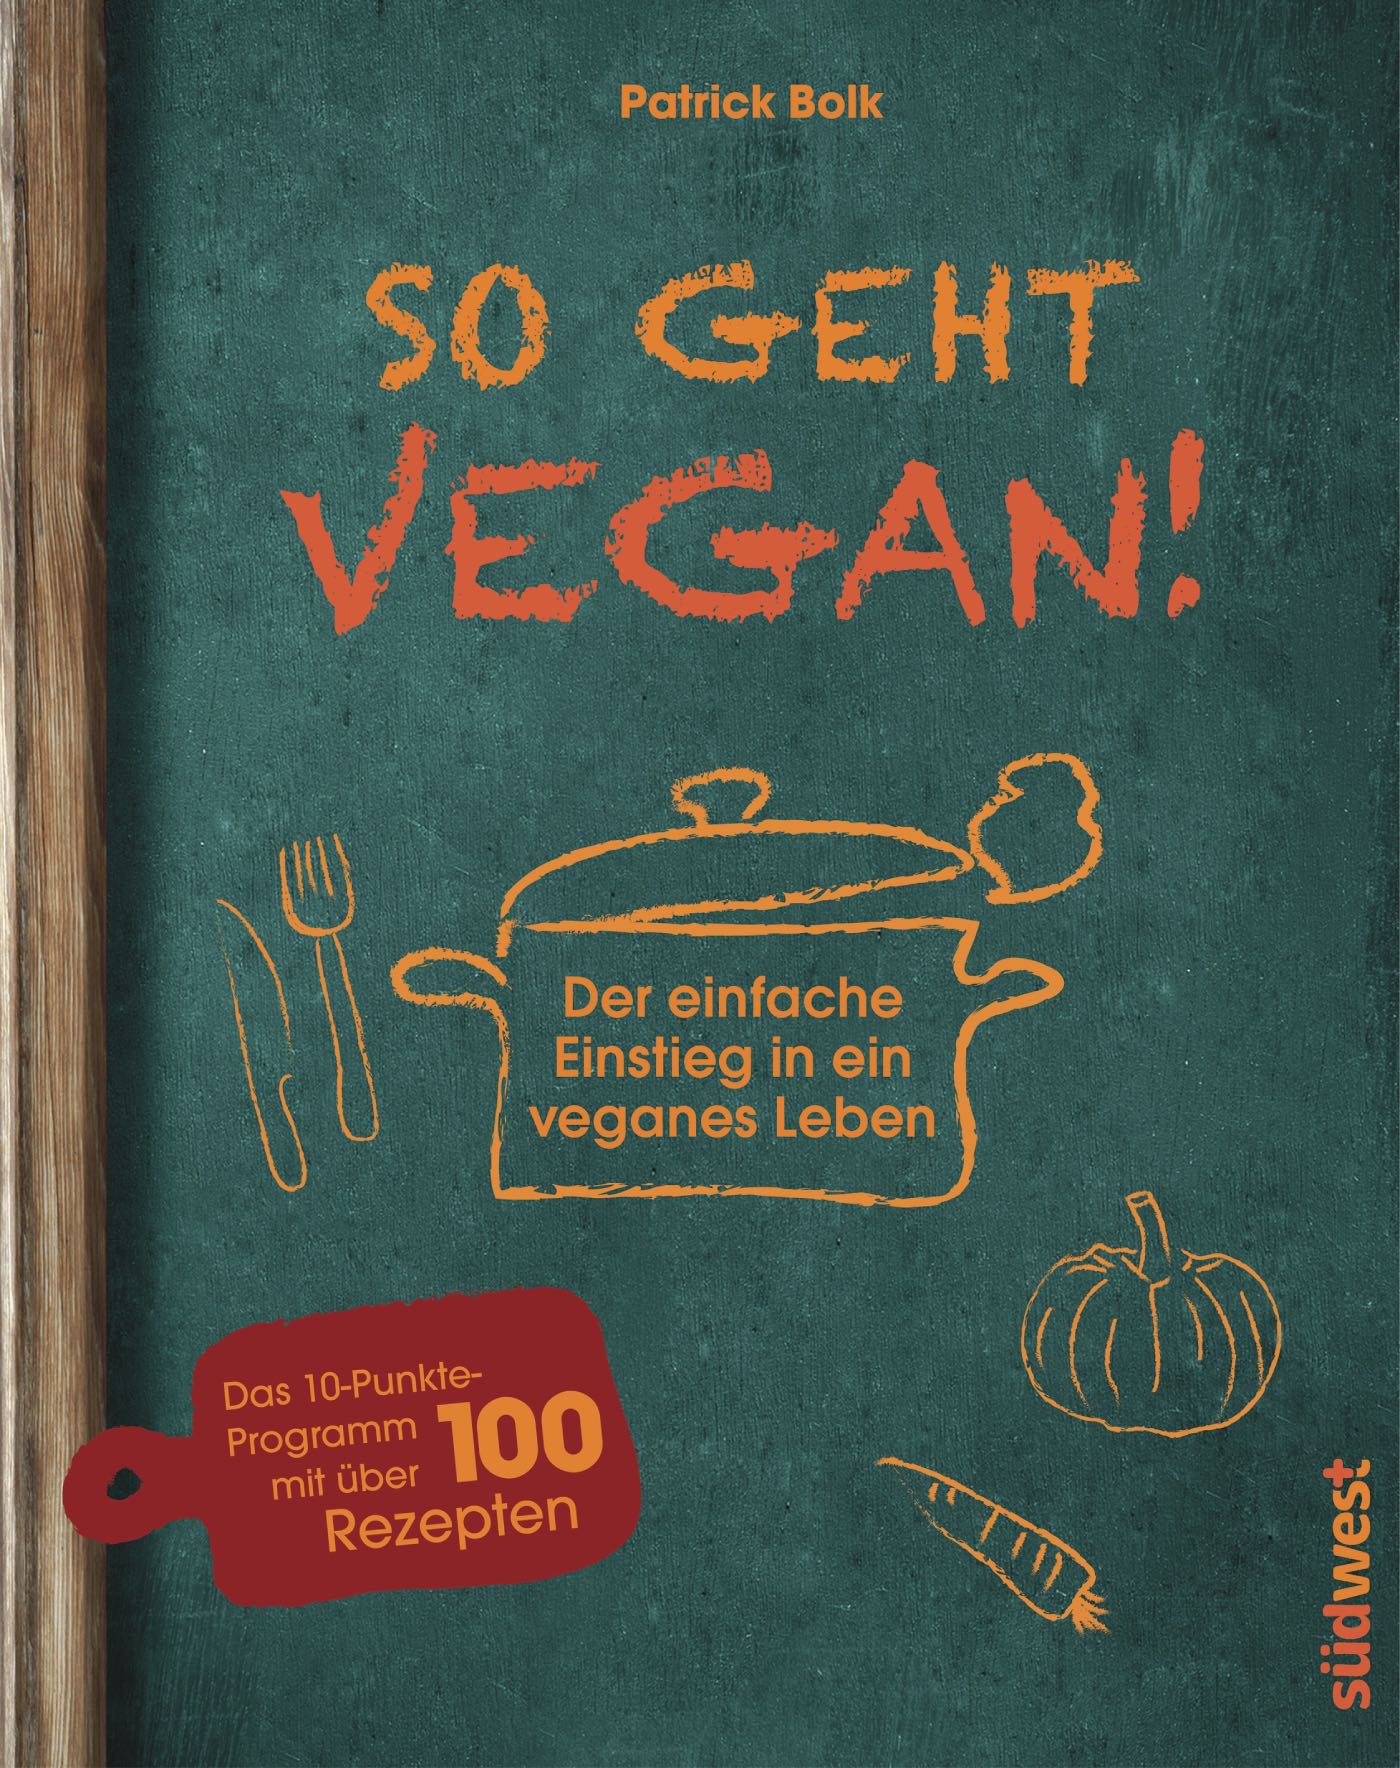 Kochbuch zum Einstieg in die vegane Küche // HIMBEER